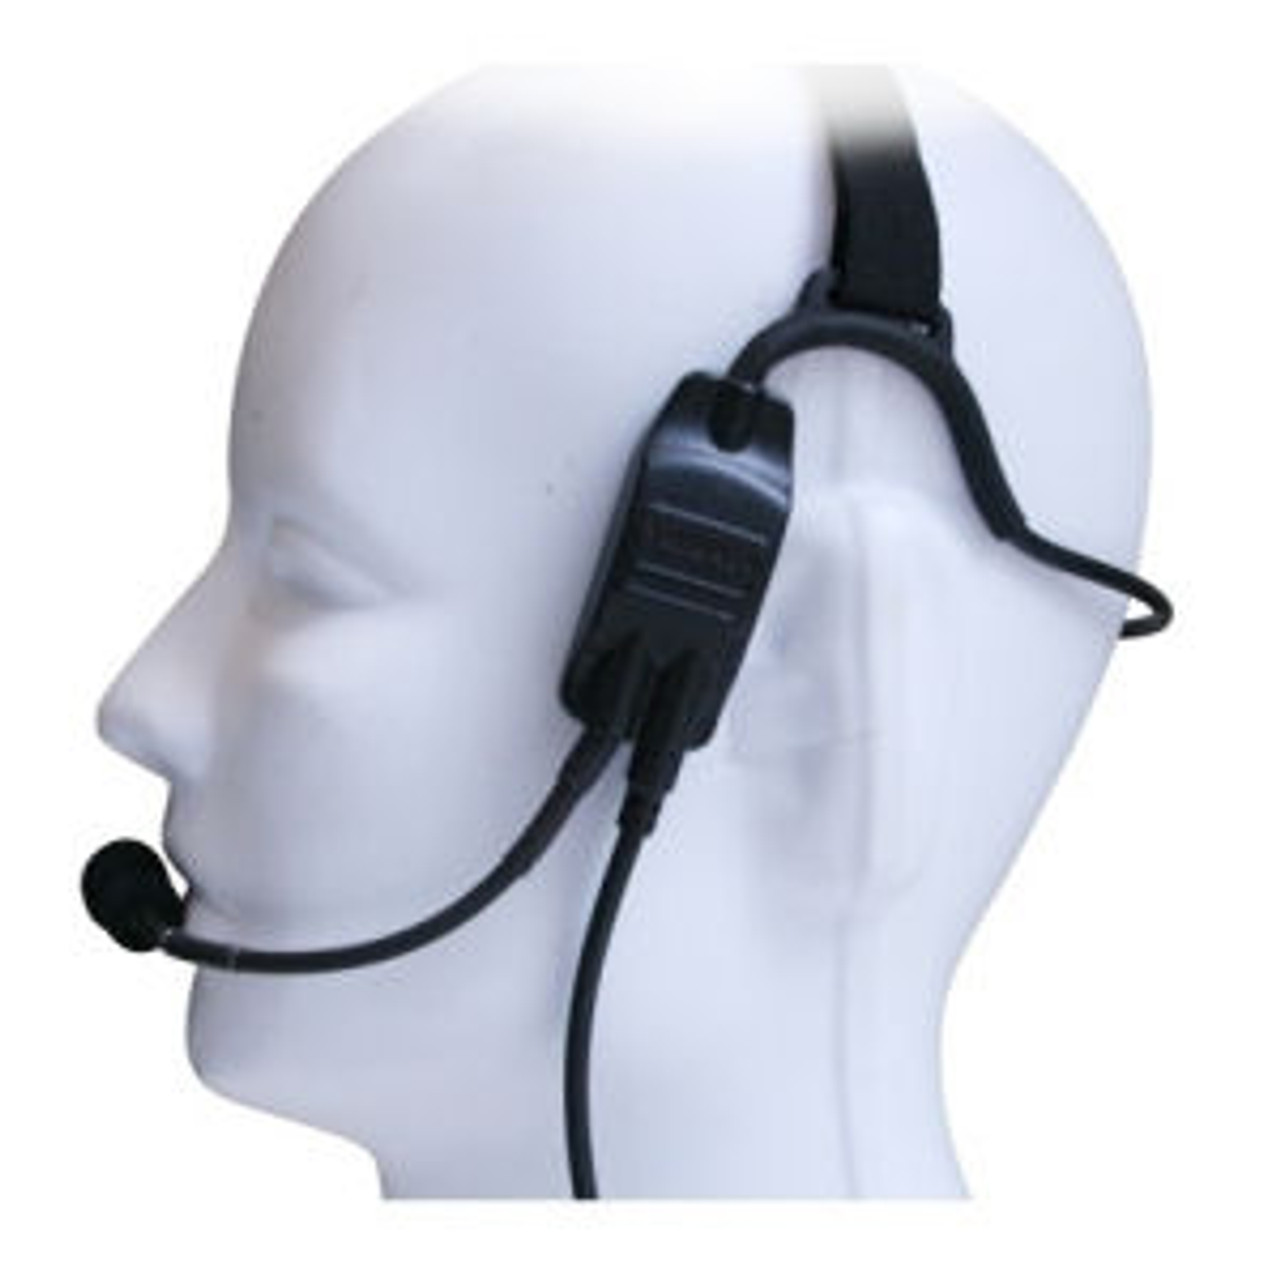 Kenwood TK-280 Temple Transducer Headset